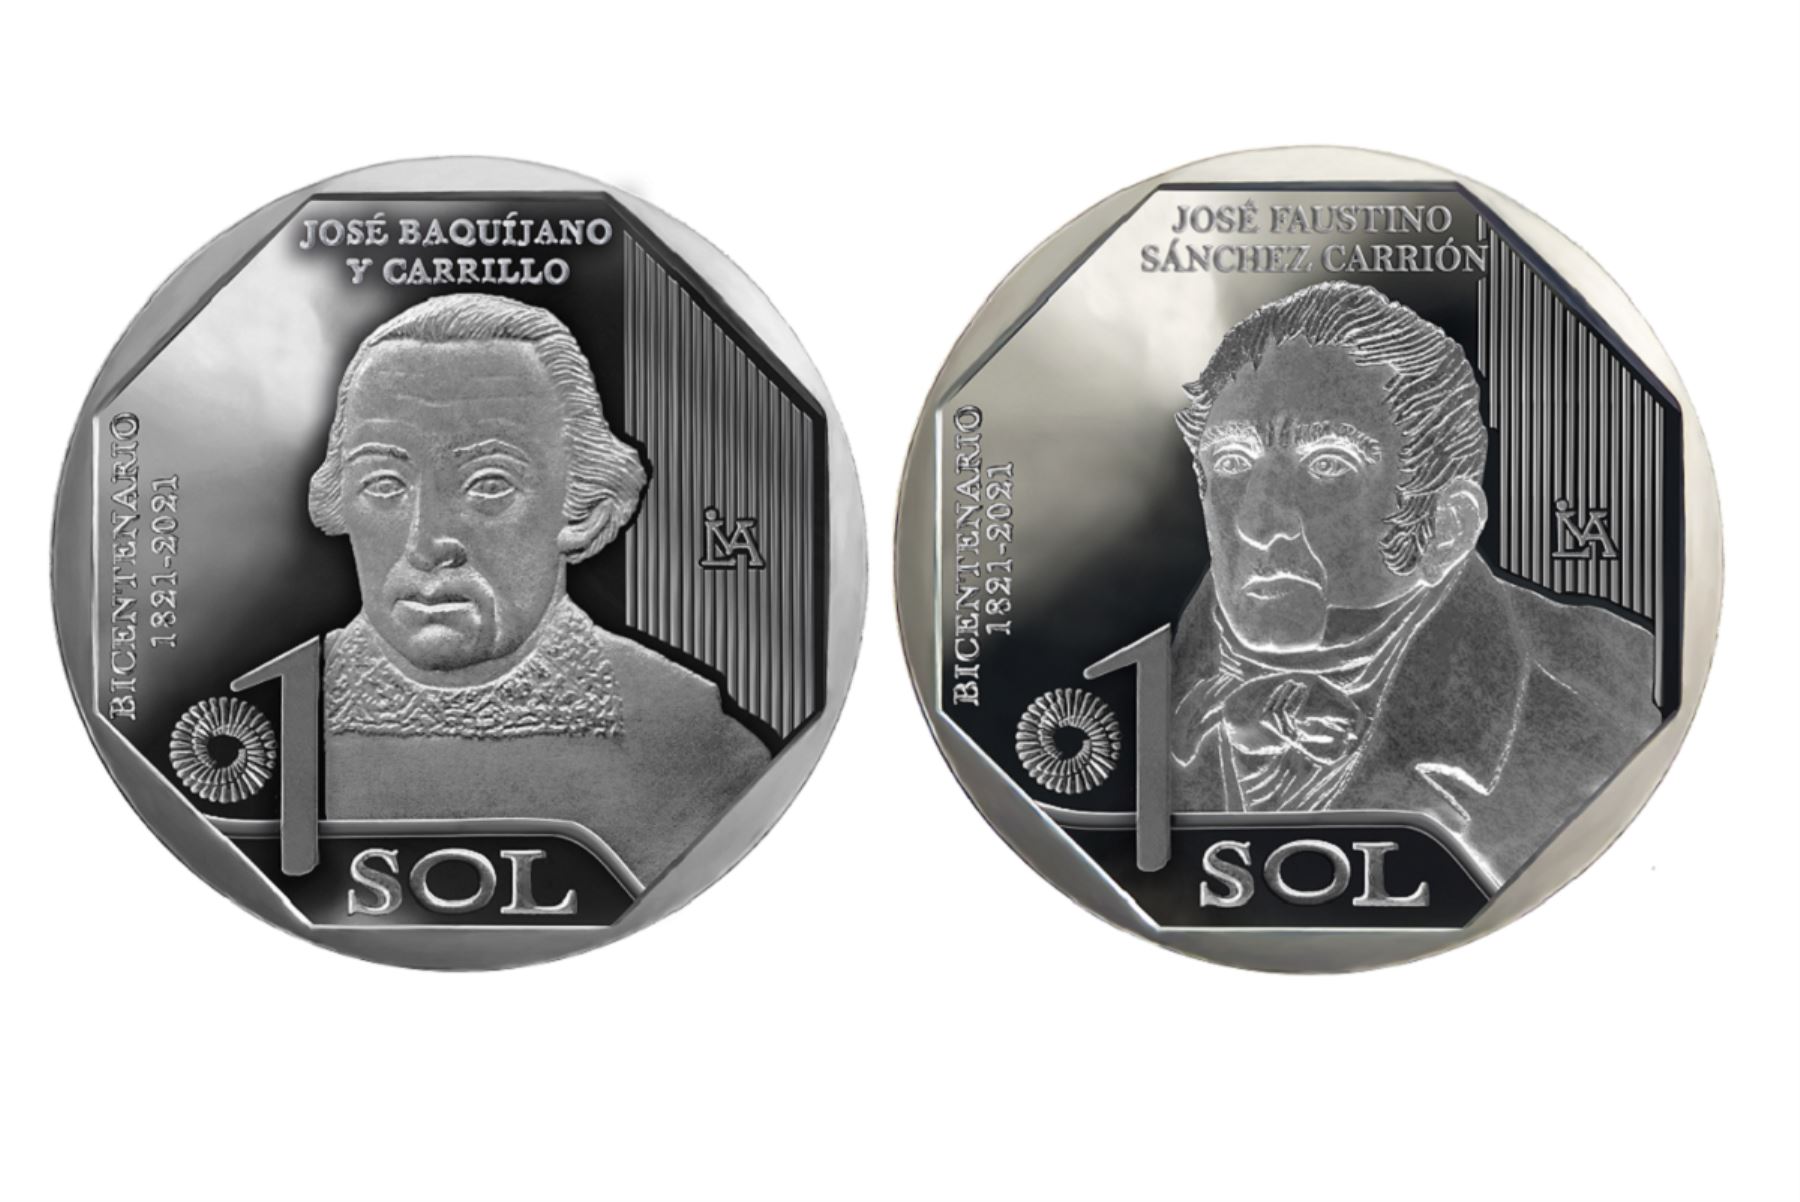 Monedas alusivas a José Baquíjano Carrillo y José Faustino Sánchez Carrión. Foto: Cortesía.